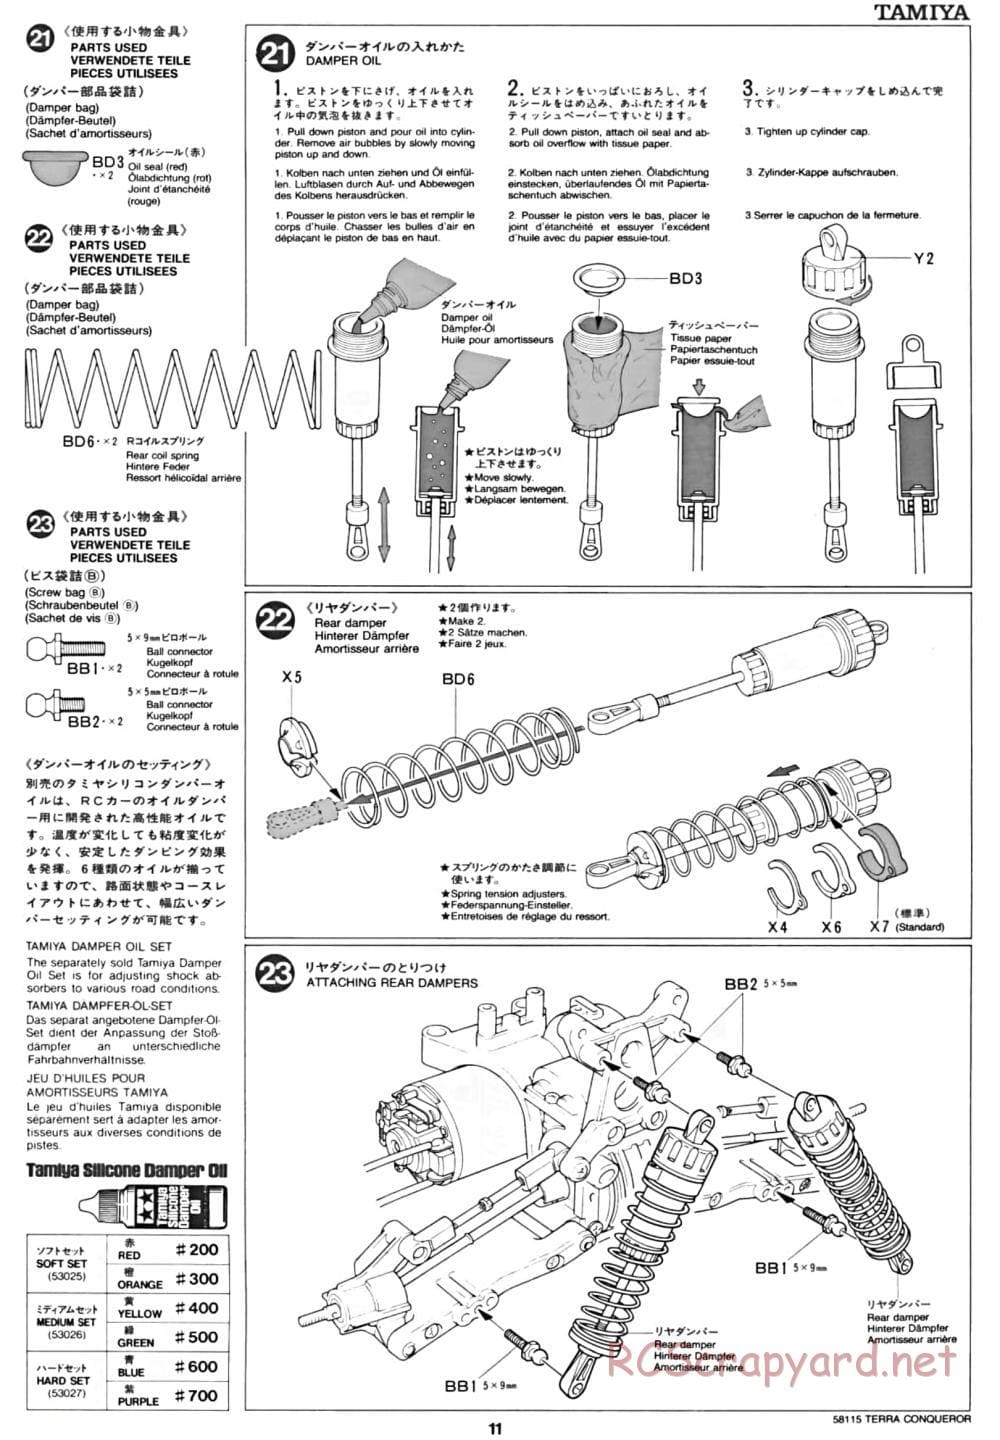 Tamiya - Terra Conqueror Chassis - Manual - Page 11